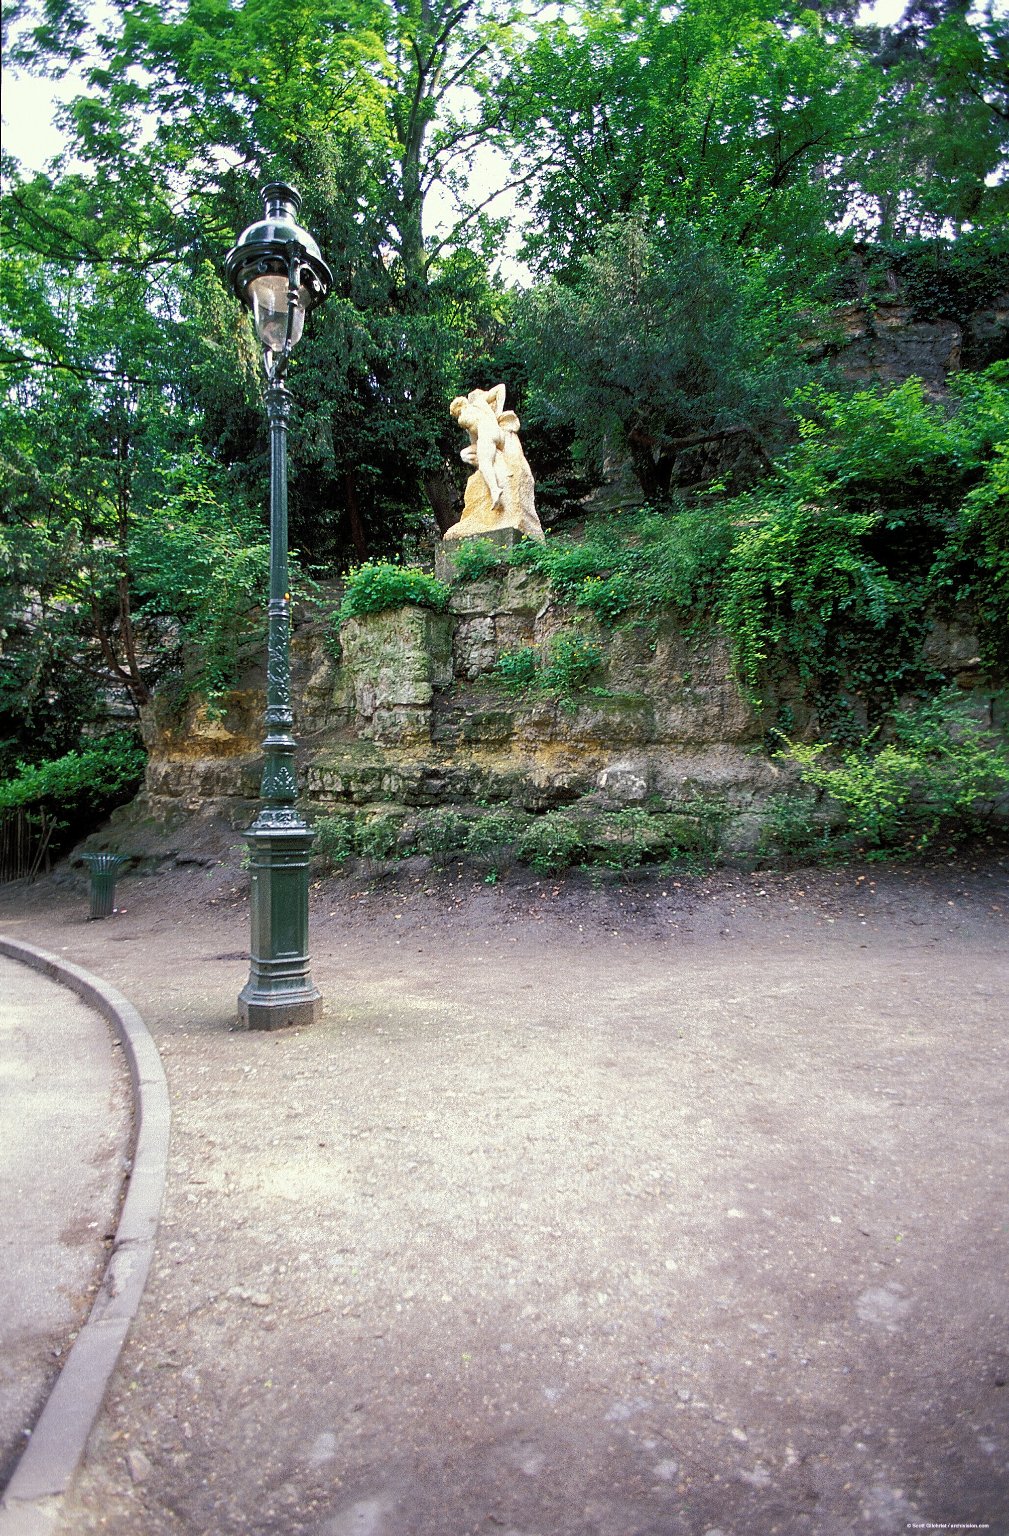 Parc des Buttes-Chaumont